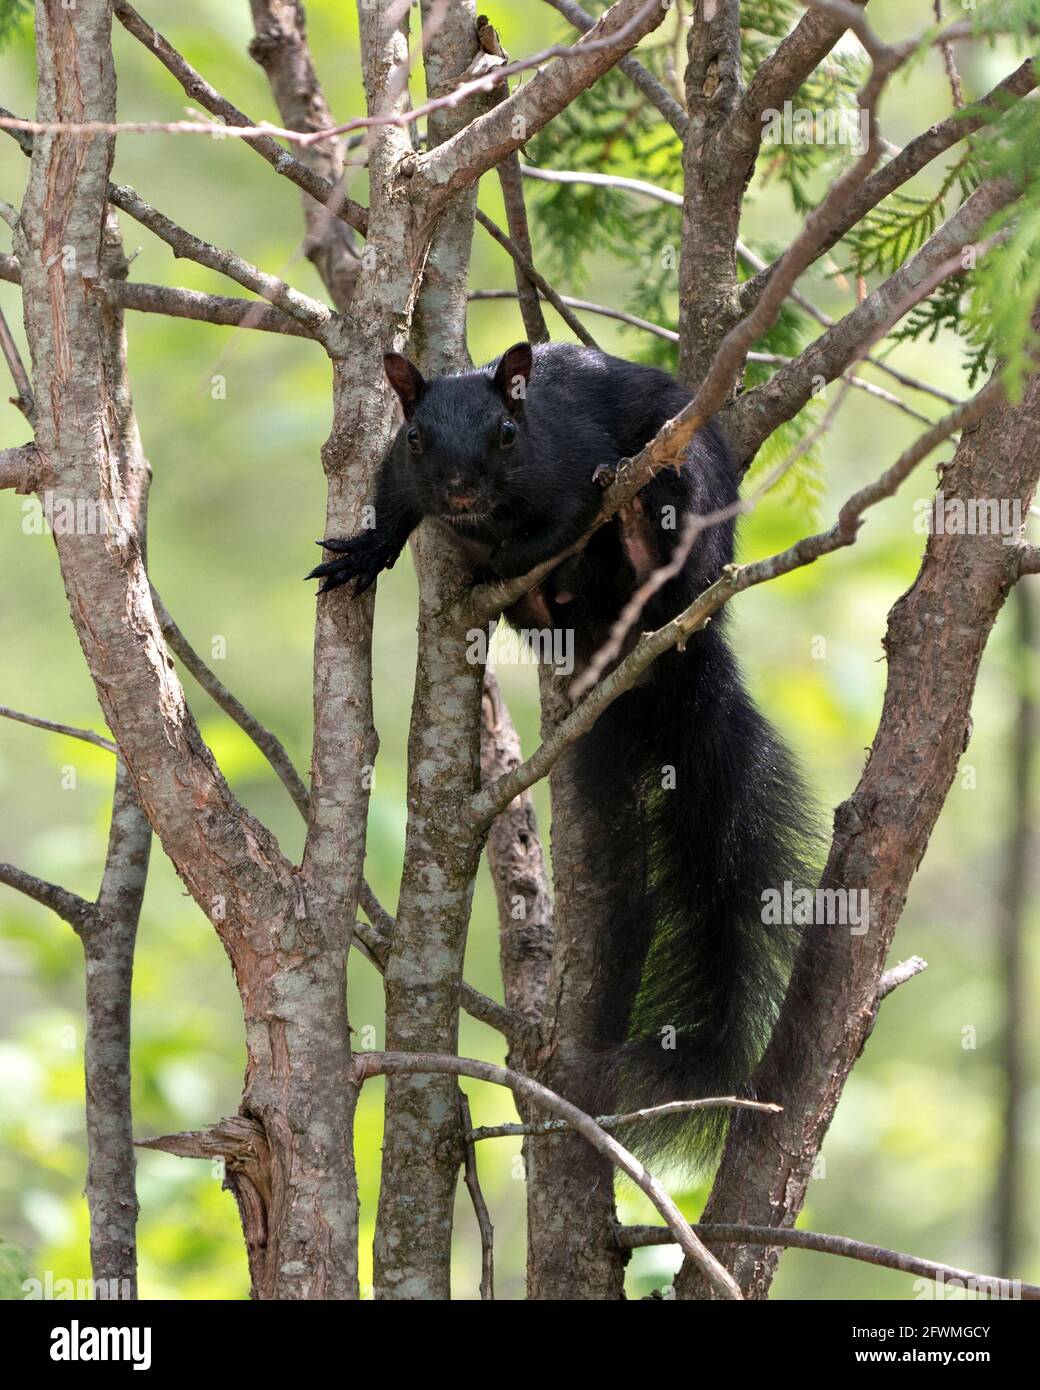 Nahaufnahme des Eichhörnchen-Profils im Wald, der auf einem Ast steht und auf einem unscharfen Hintergrund sein schwarzes Fell, seine Pfoten und seinen buschigen Schwanz zeigt. Stockfoto